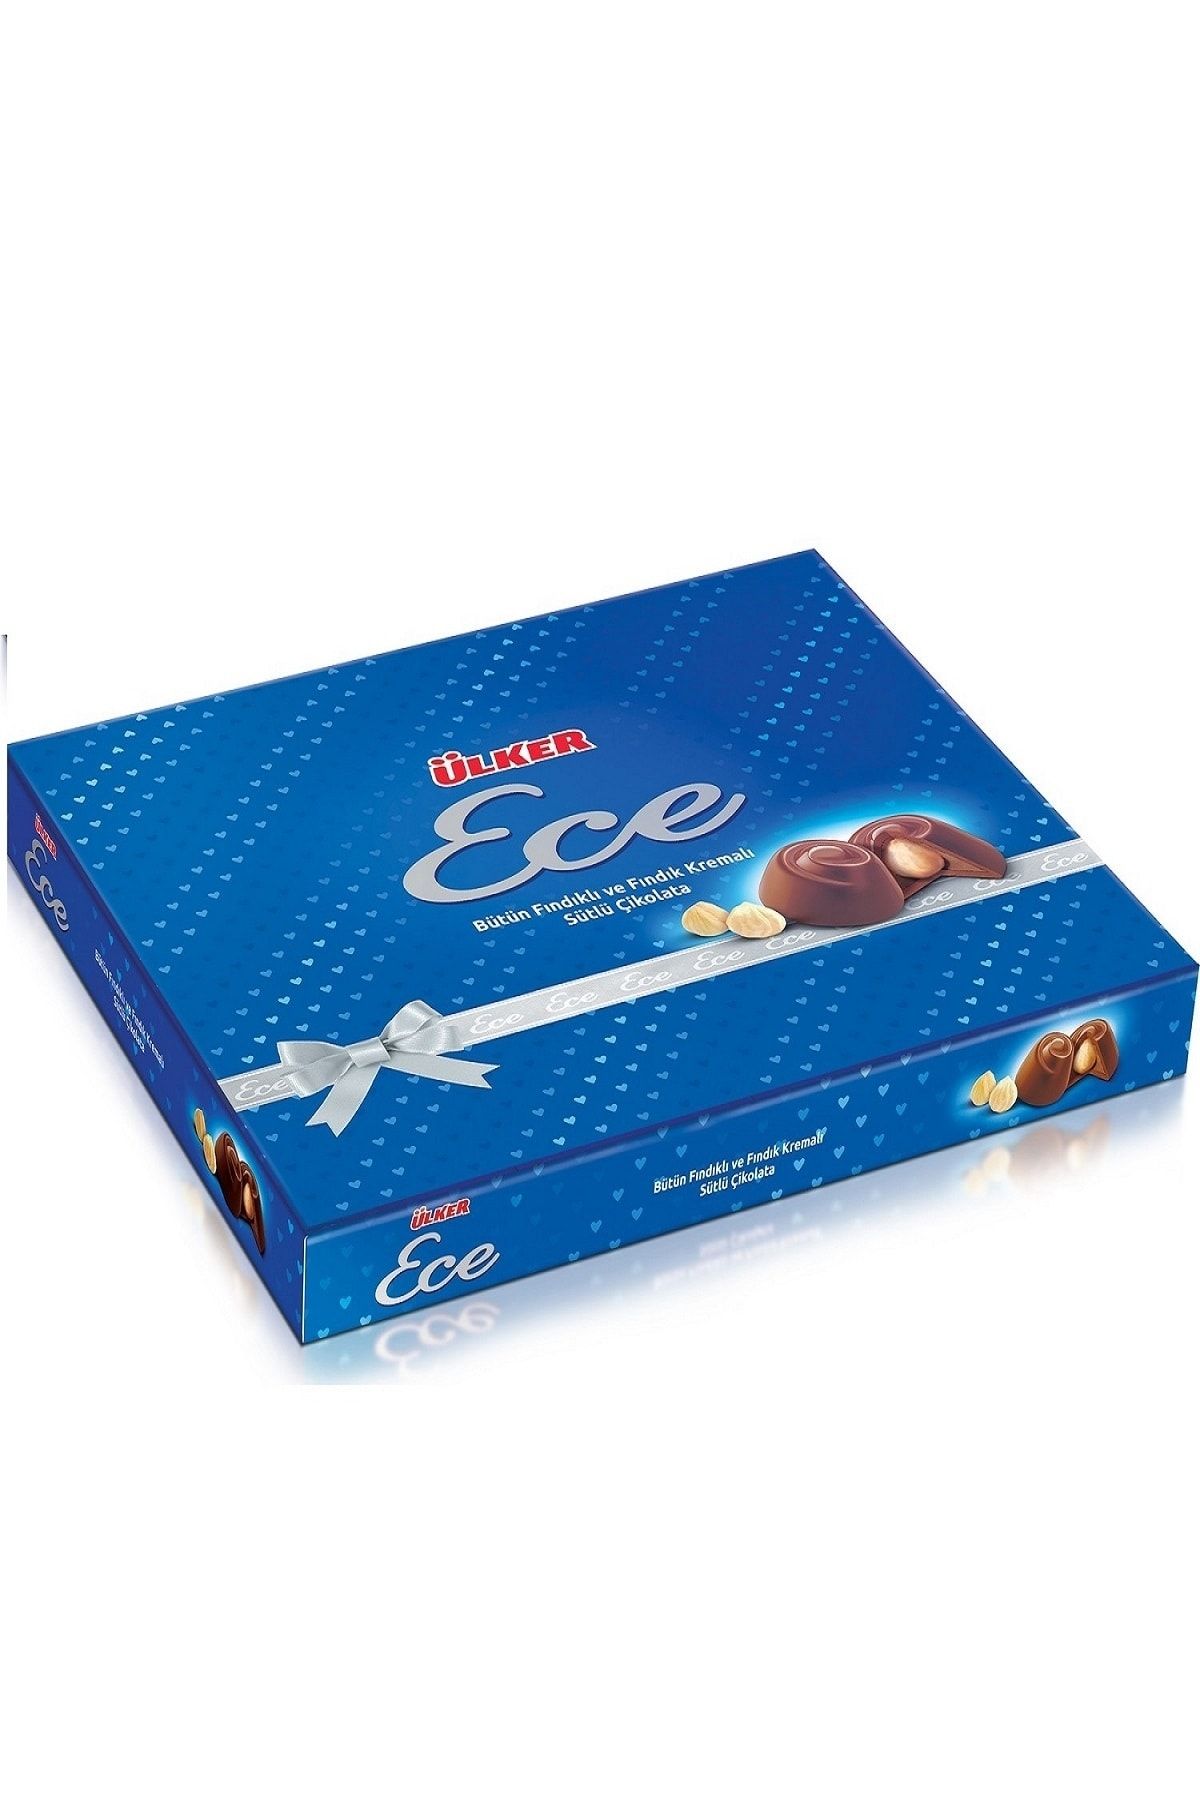 Ülker Ece Ikramlık Çikolata Fındık Kutu 215gr X6 Adet